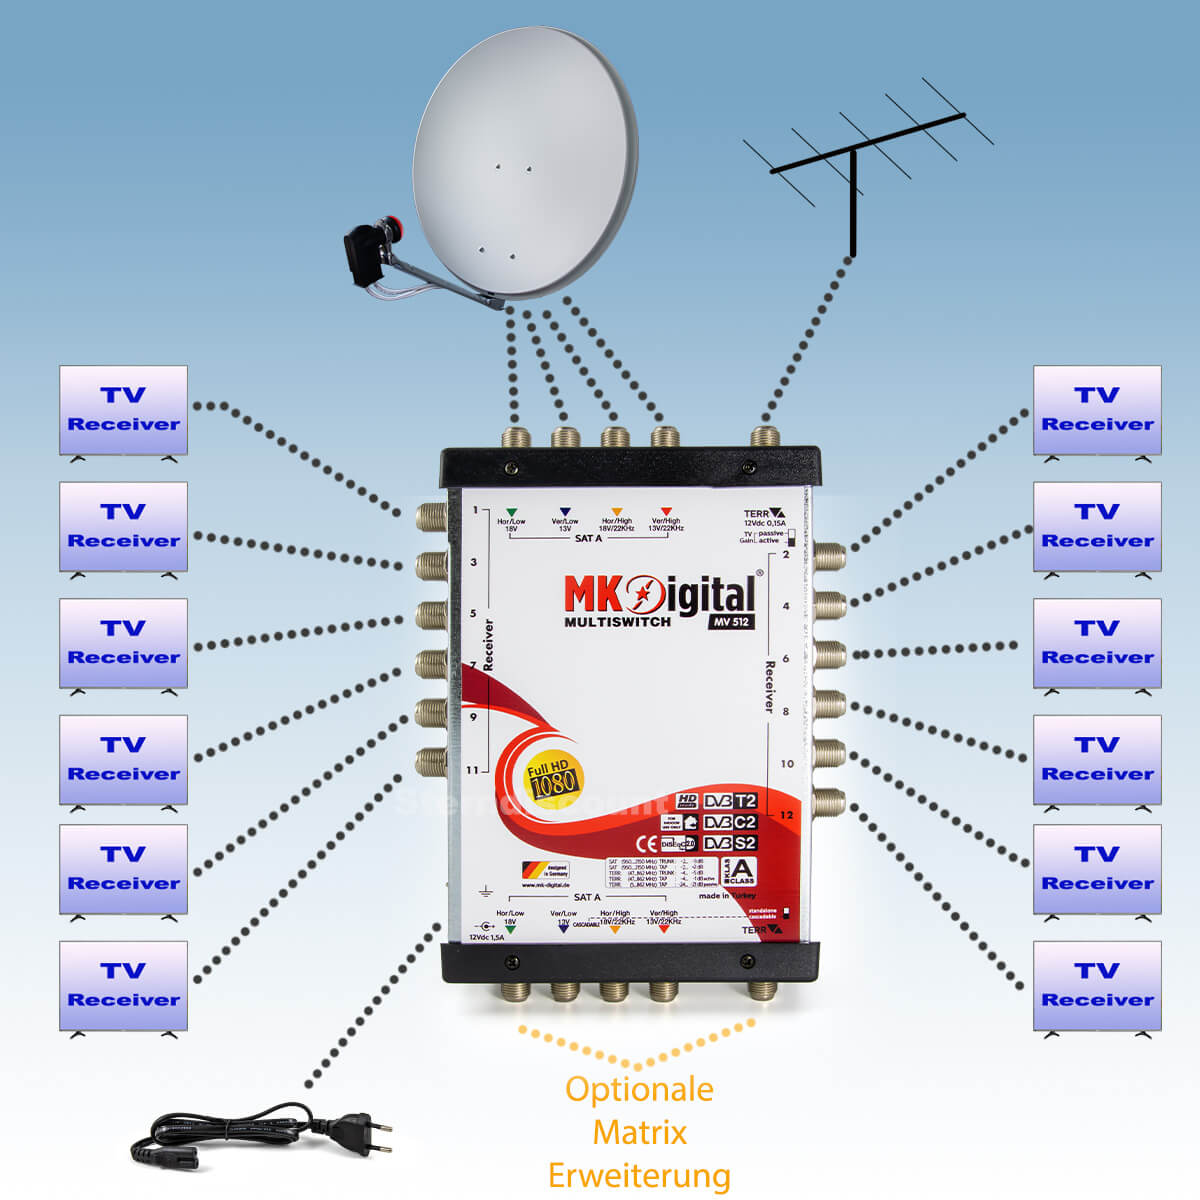 MK-Digital-Multischalter-5-12-anschließen-beispiel